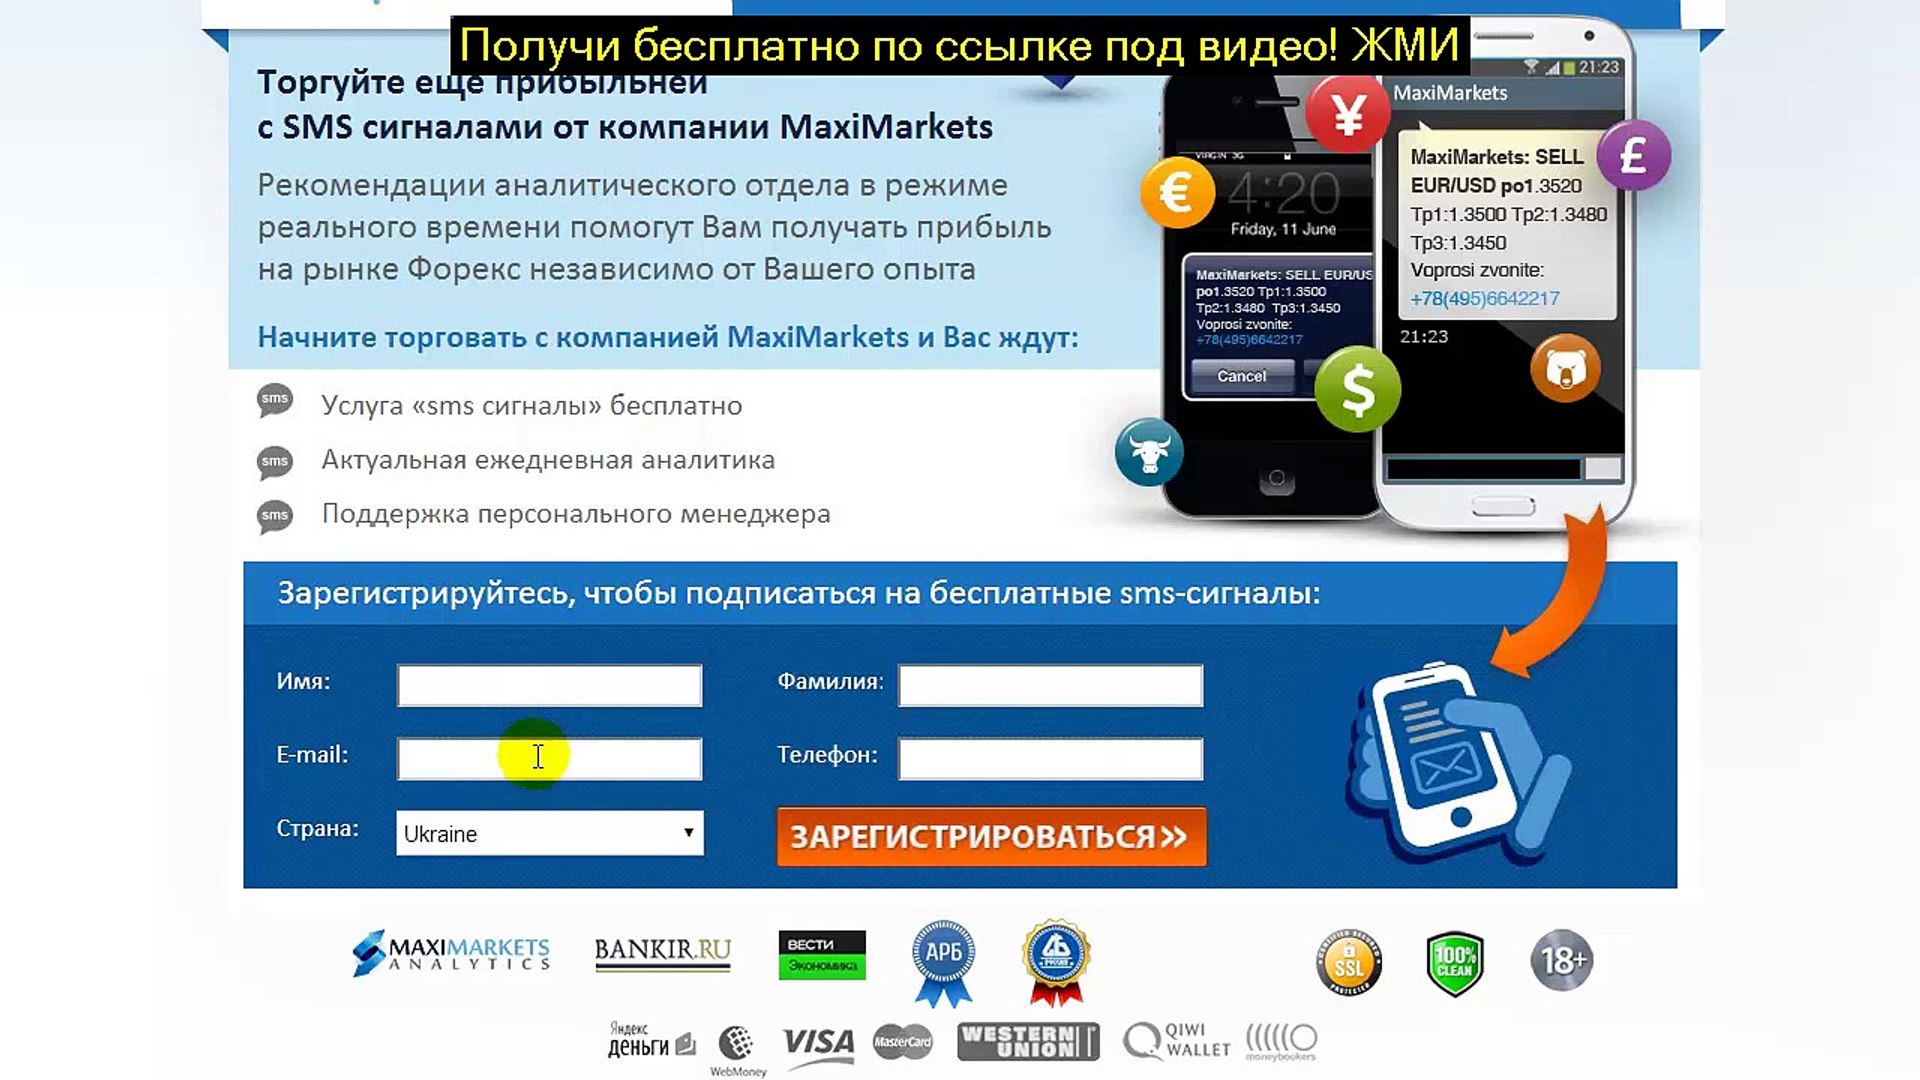 Web bankir ru. Торговые сигналы телефон. Signal как зарегистрироваться. Регистрируйся на платформе MAXMARKET пошагово. Avtobilga Video Registration.